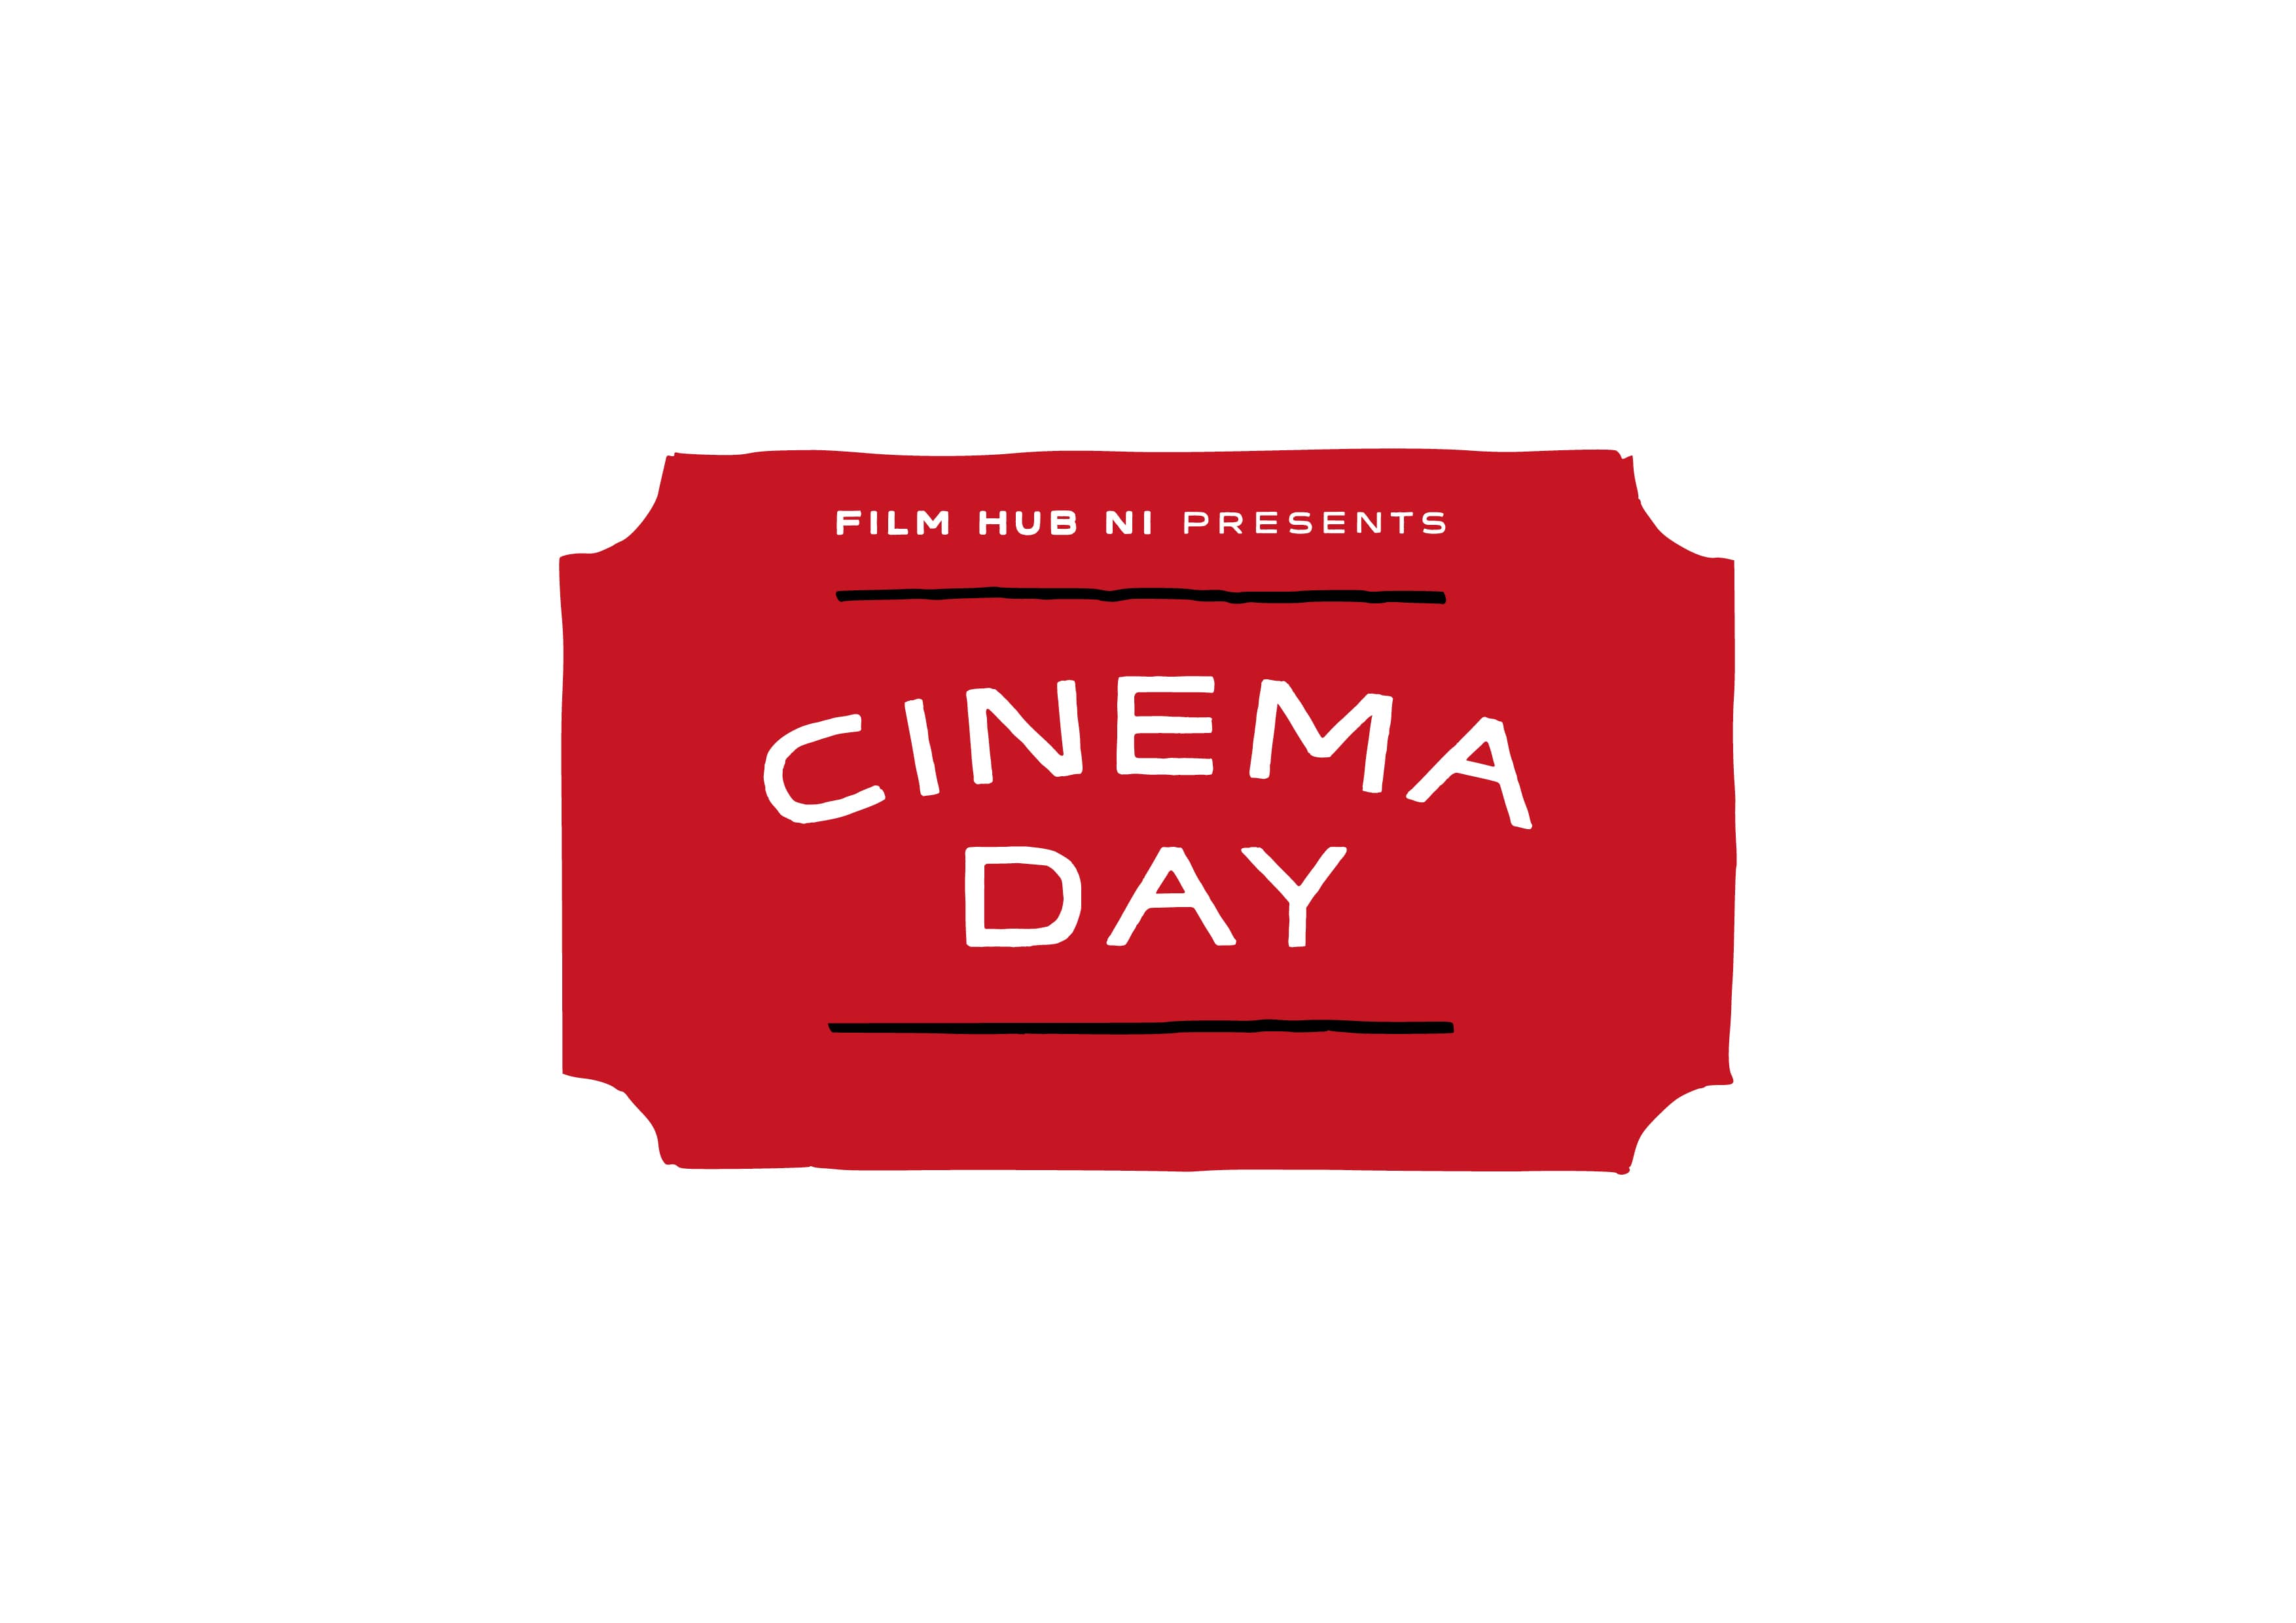 cinema-day-identity6.jpg